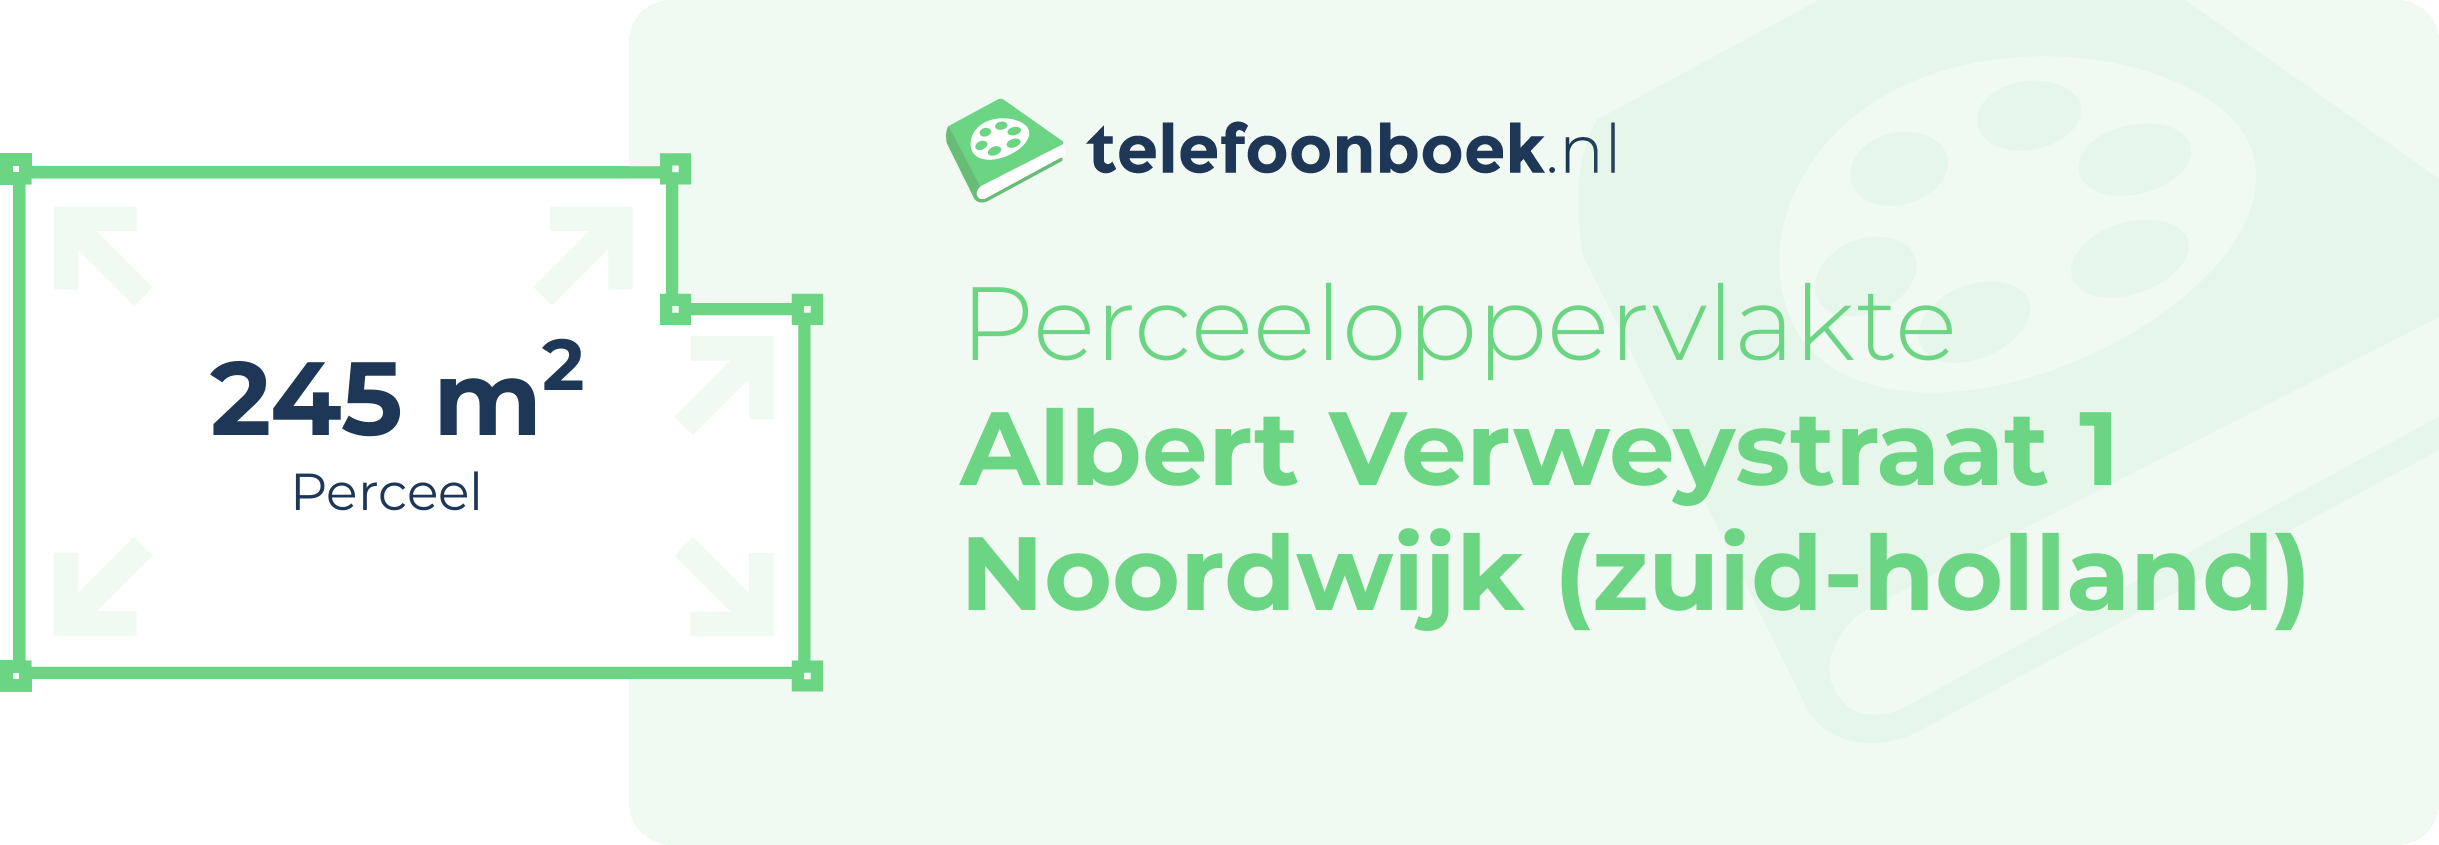 Perceeloppervlakte Albert Verweystraat 1 Noordwijk (Zuid-Holland)